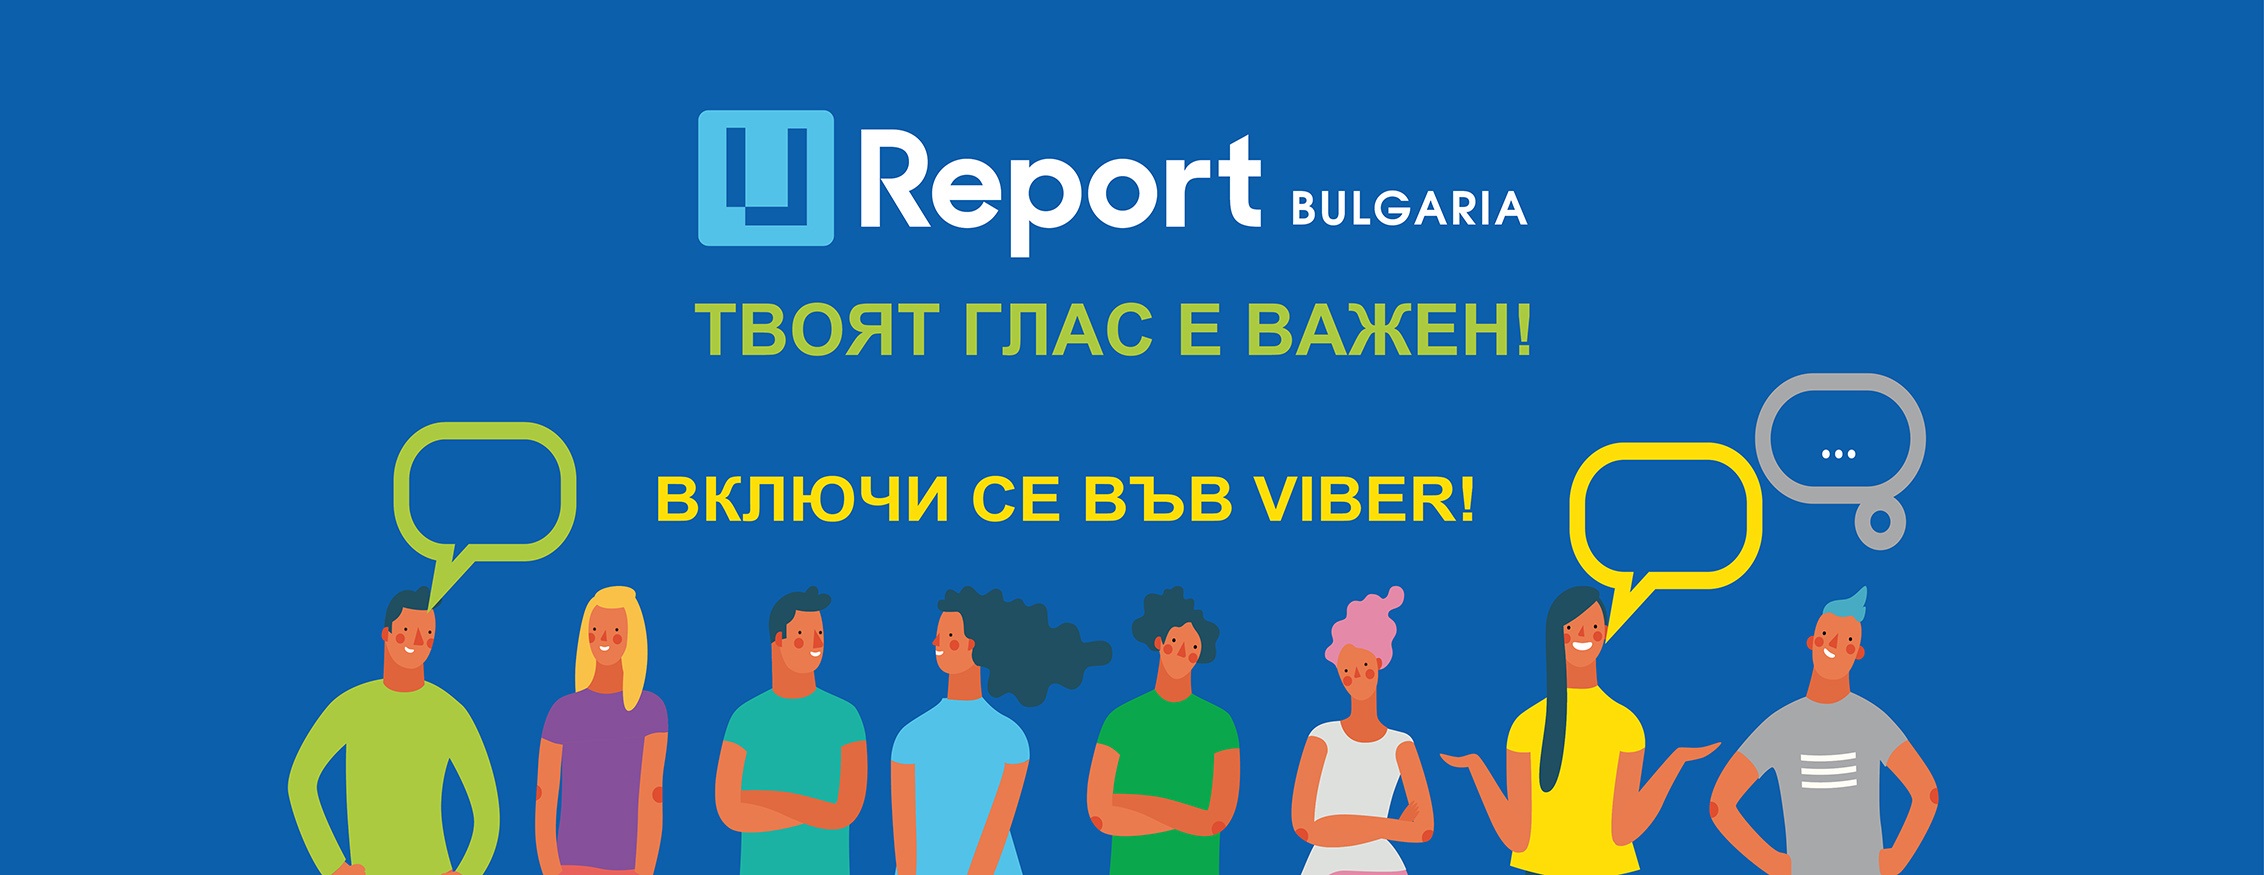 U-Report Bulgaria